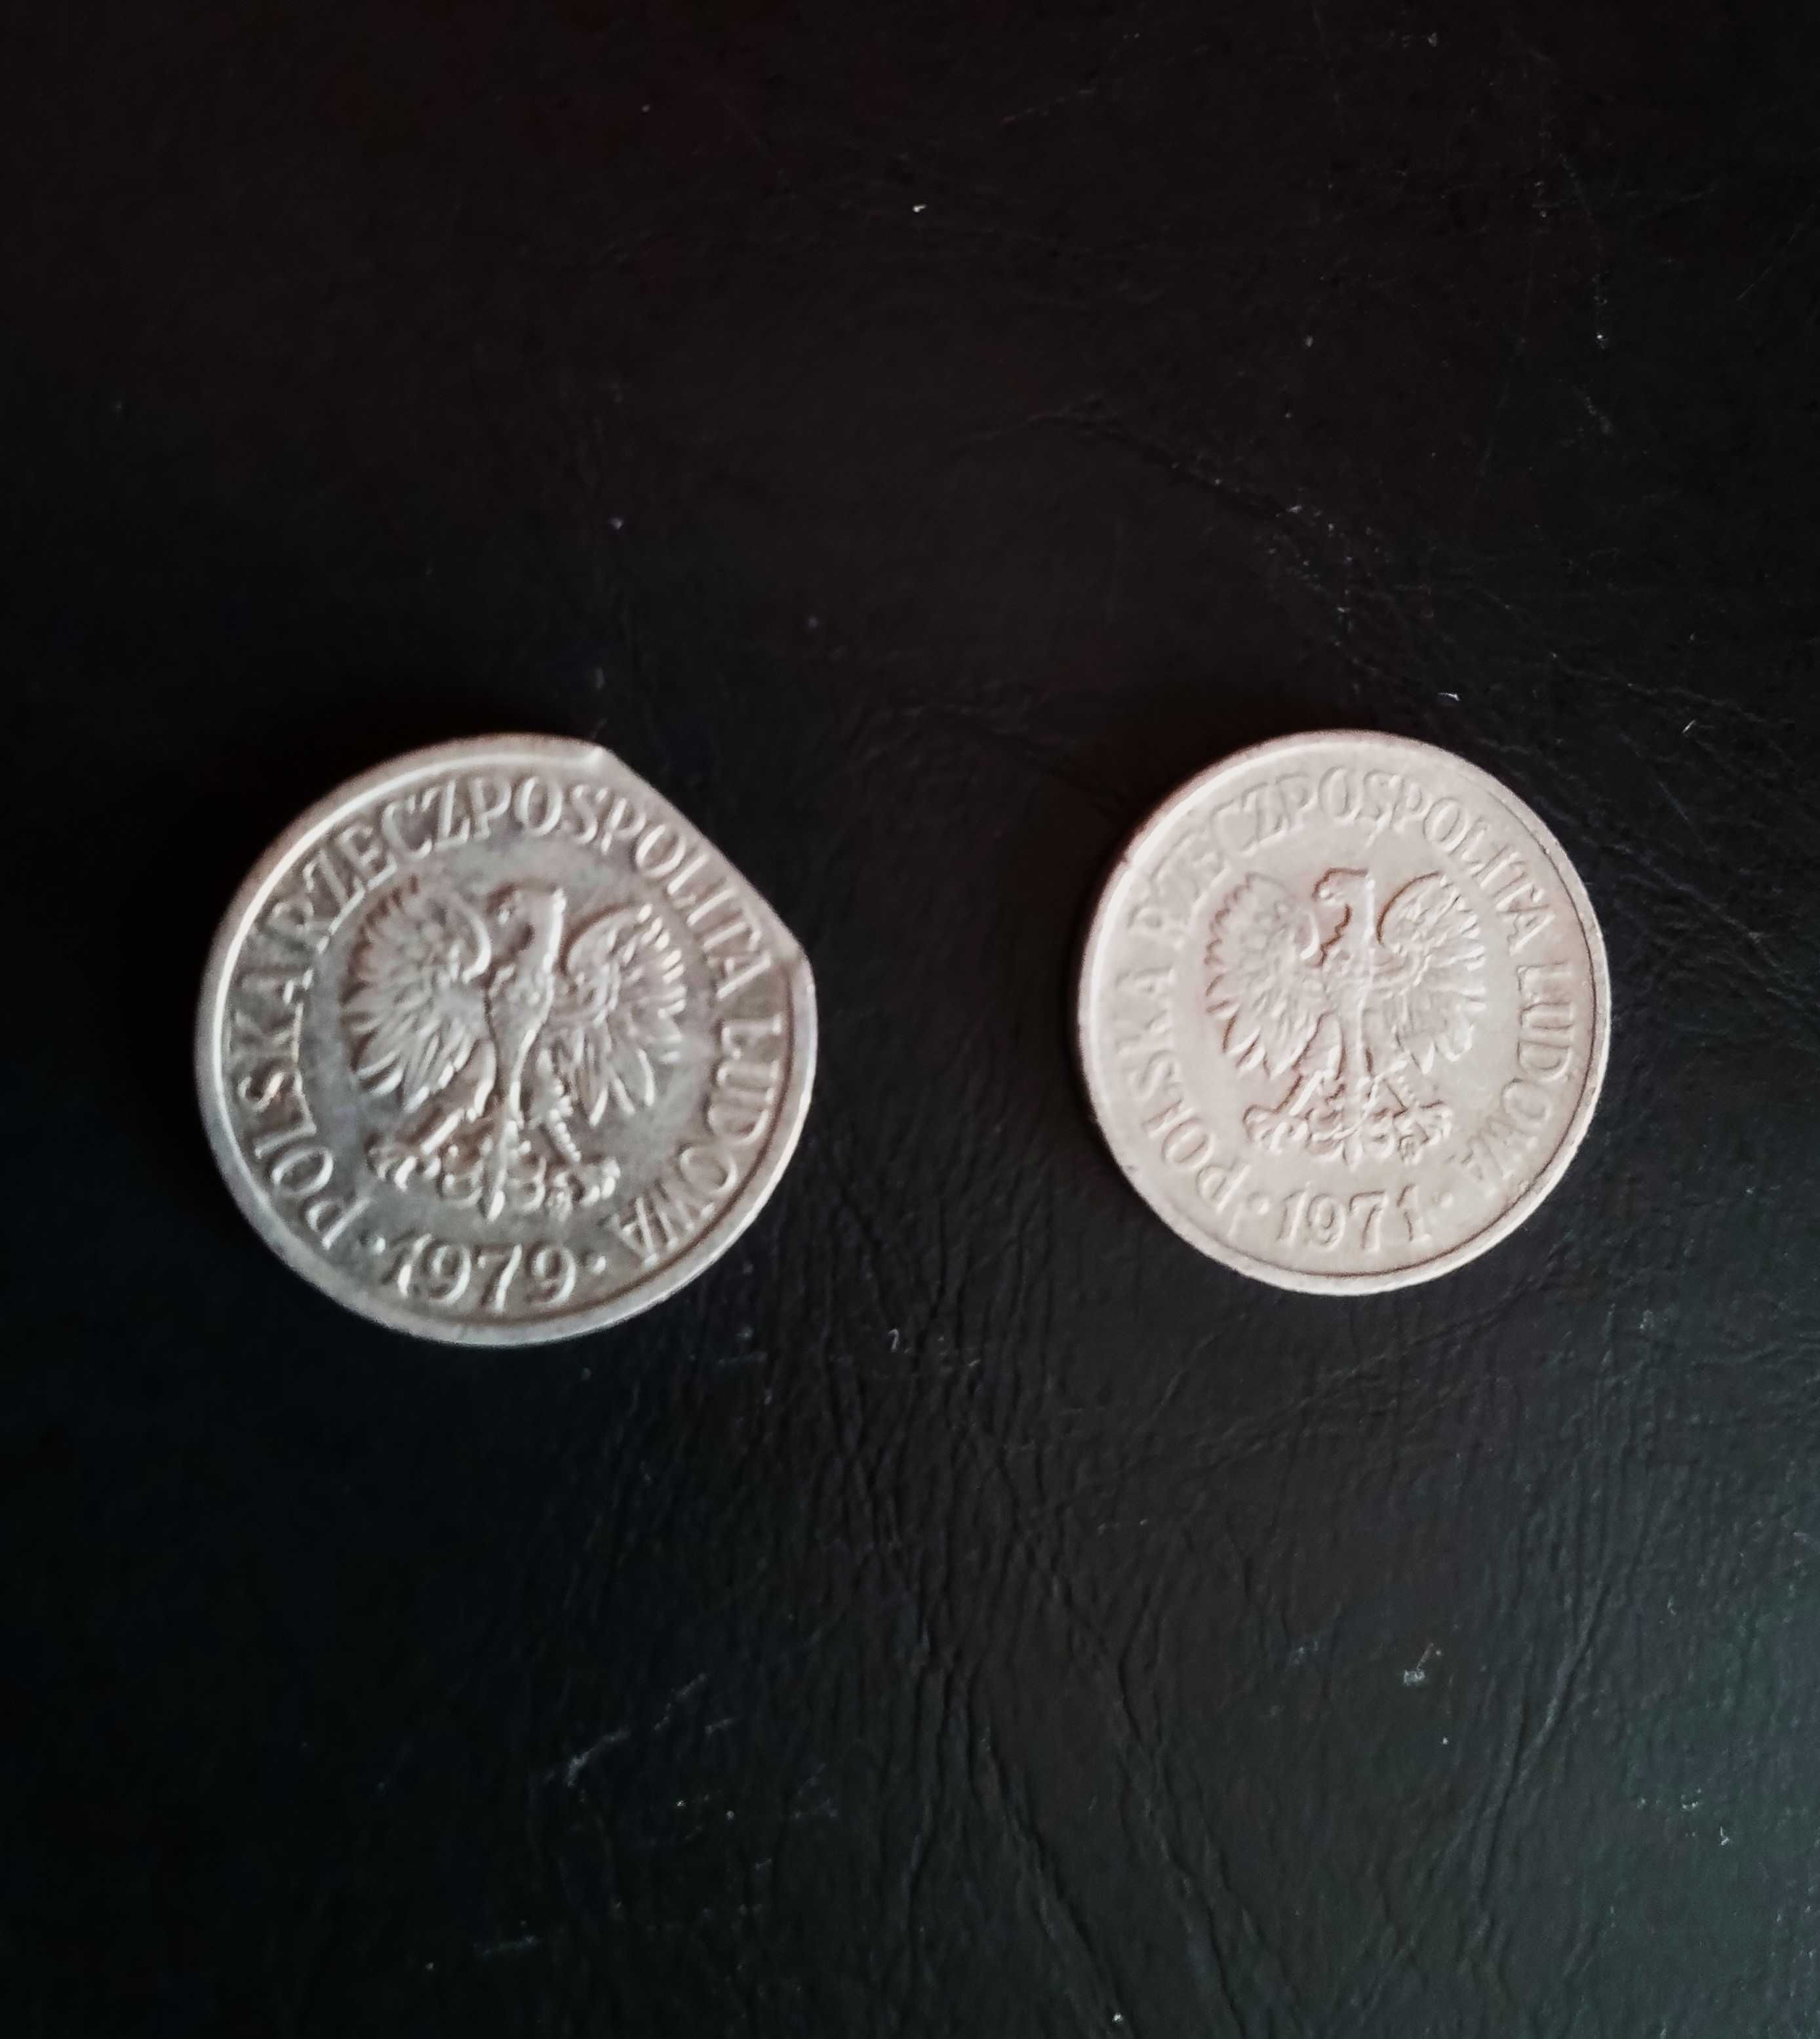 destrukt moneta 10 gr 1971 i 10gr 1979